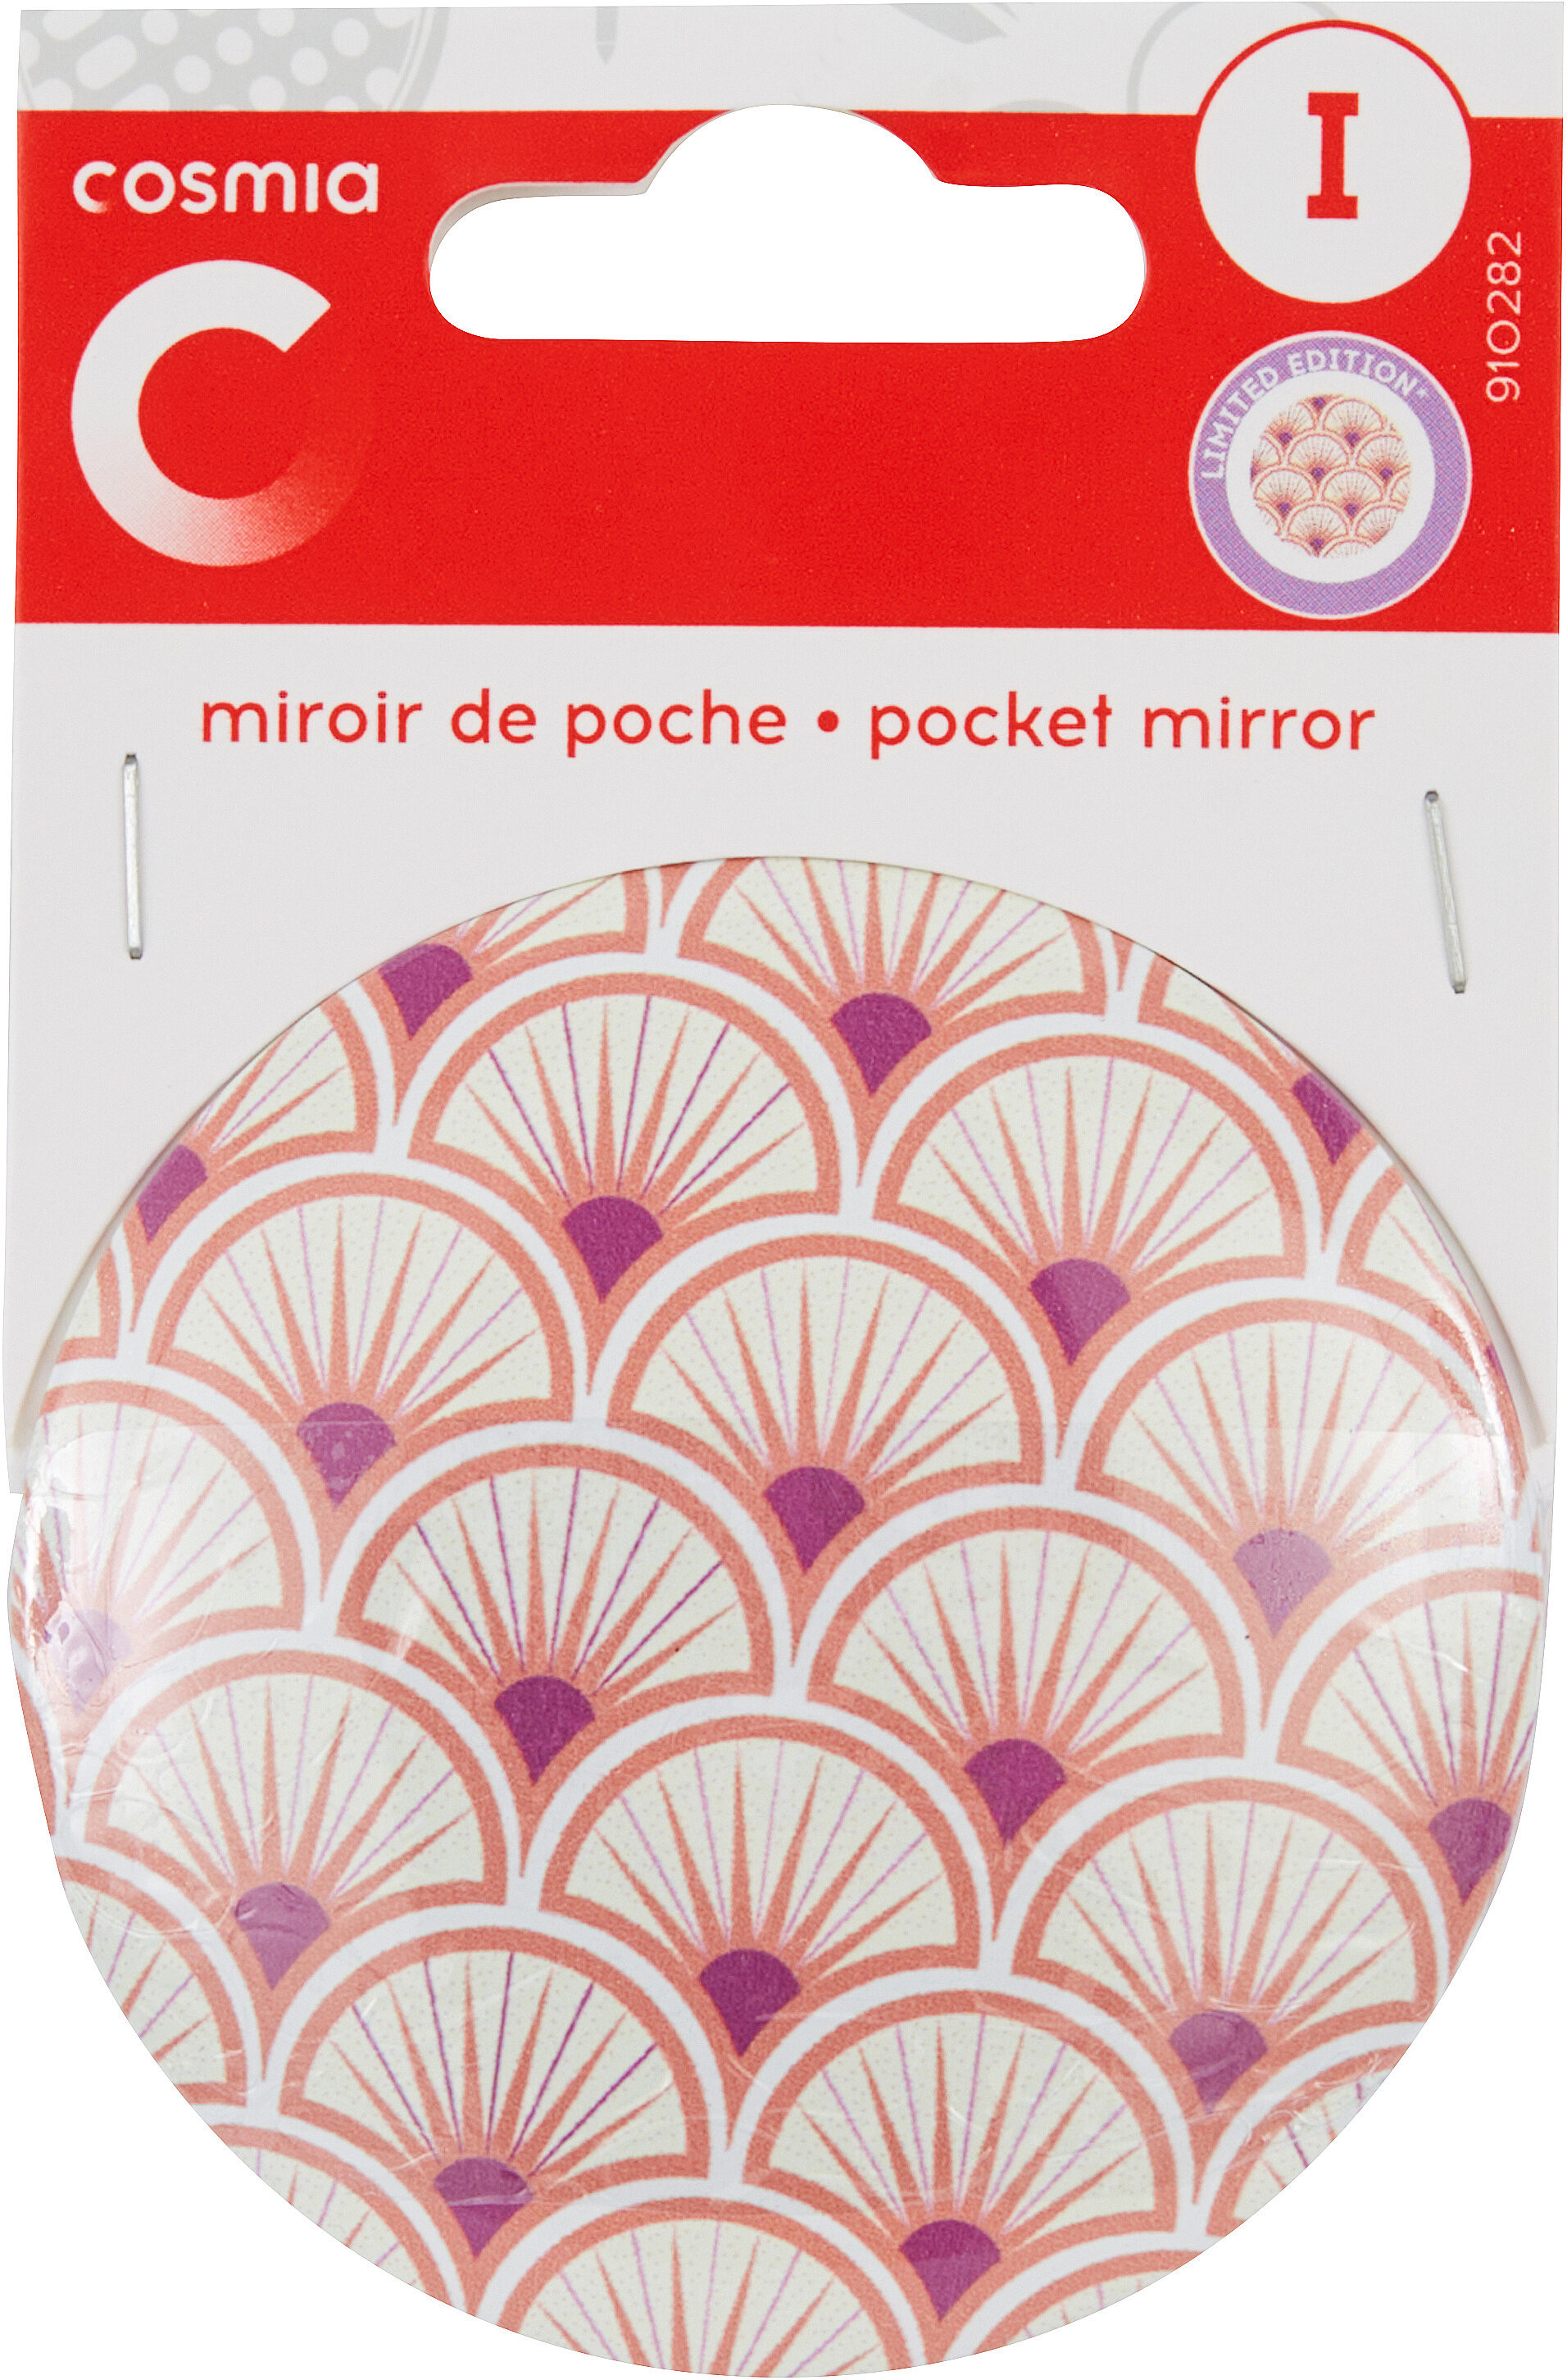 Miroir de poche - Produit - fr